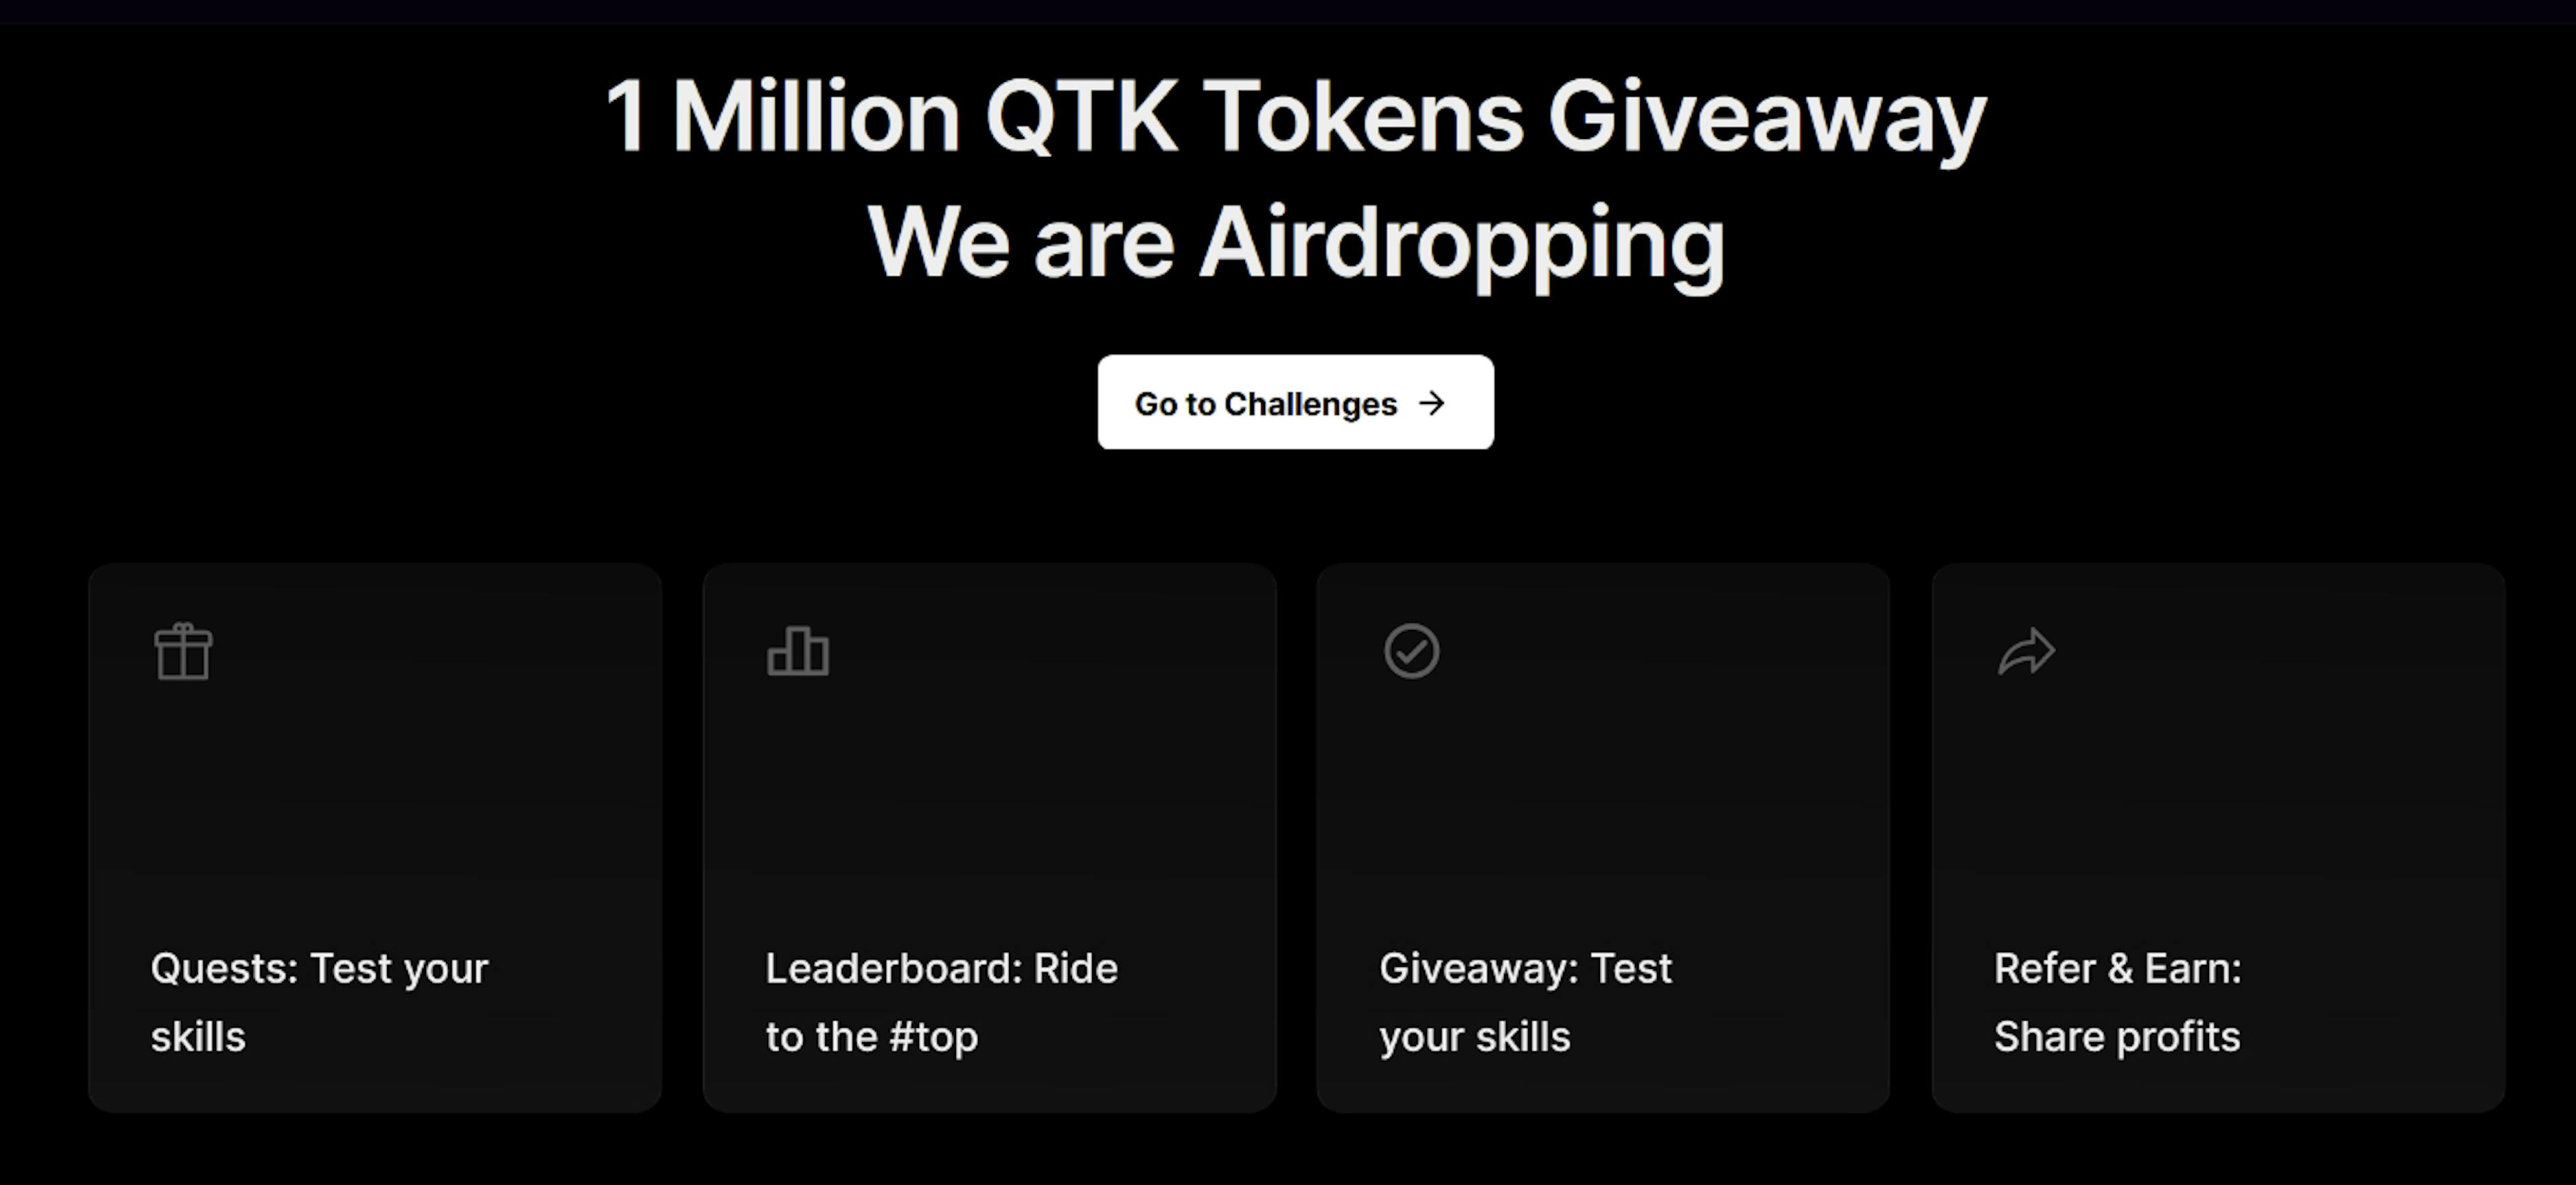 featured image - QTK startet Airdrop im Wert von 1 Million US-Dollar: Fordern Sie jetzt Ihren Anteil an